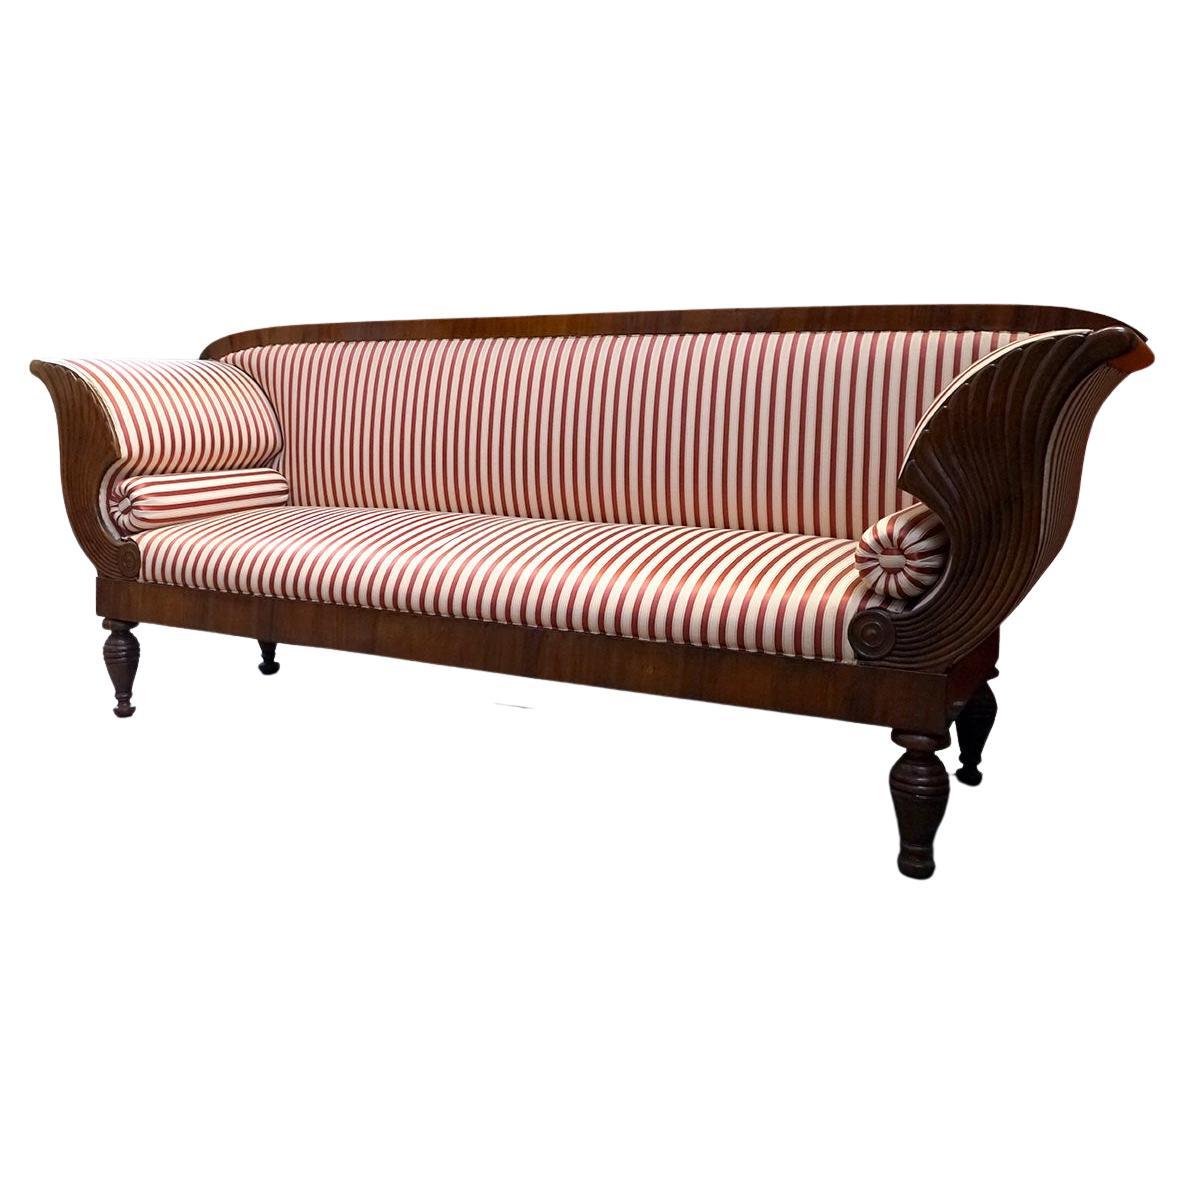 Biedermaier Style Sofa in Walnut